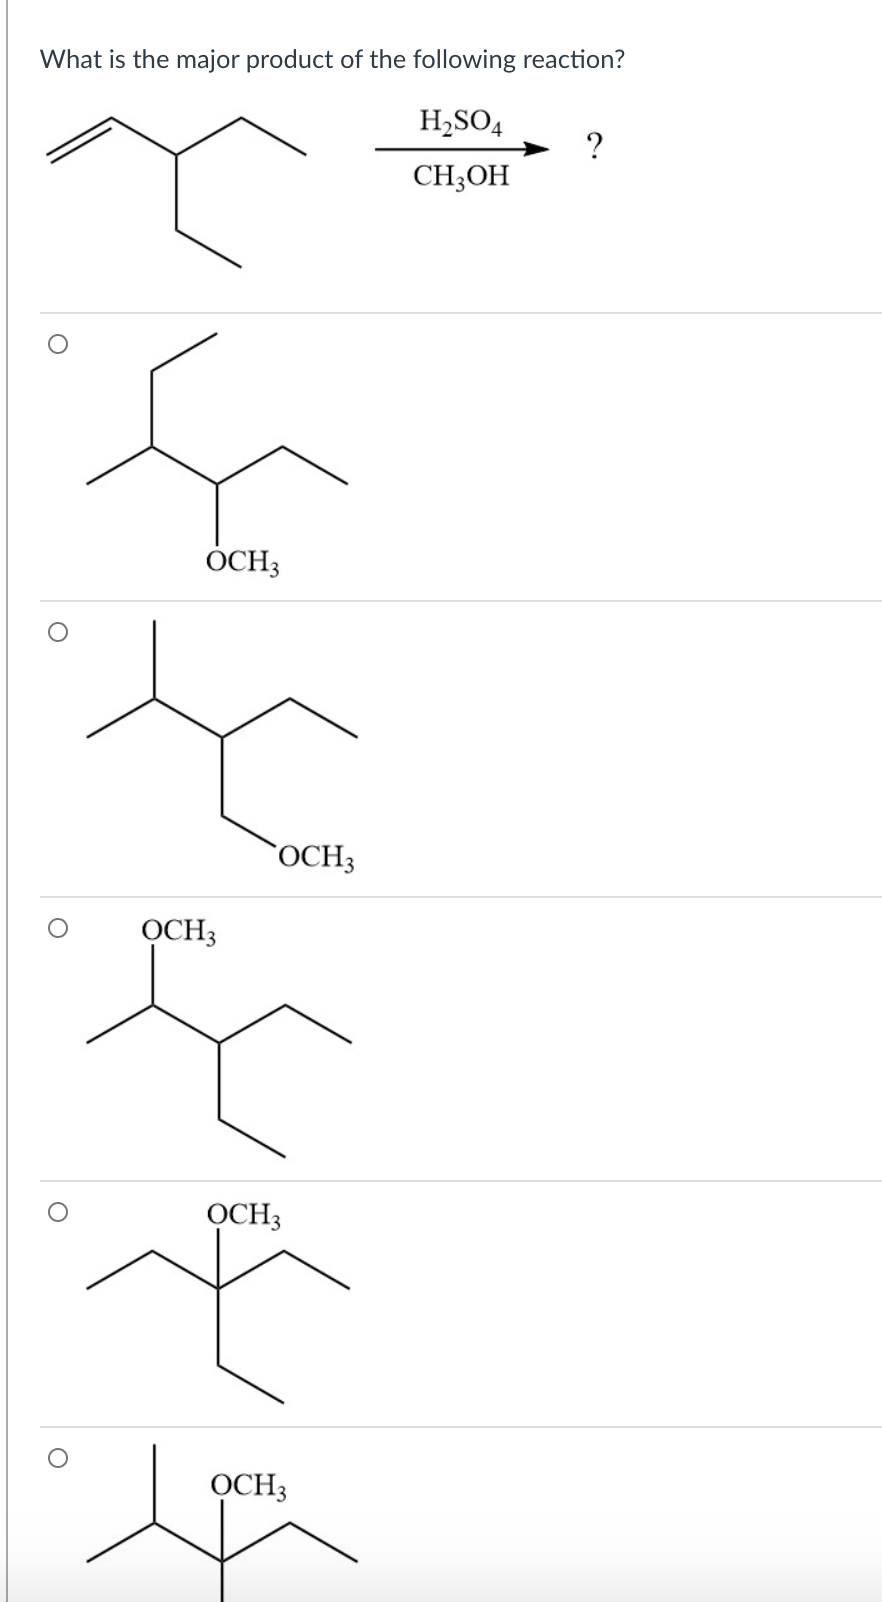 What is the major product of the following reaction?
H,SO4
CH;OH
ÓCH3
`OCH3
OCH3
OCH3
OCH3
